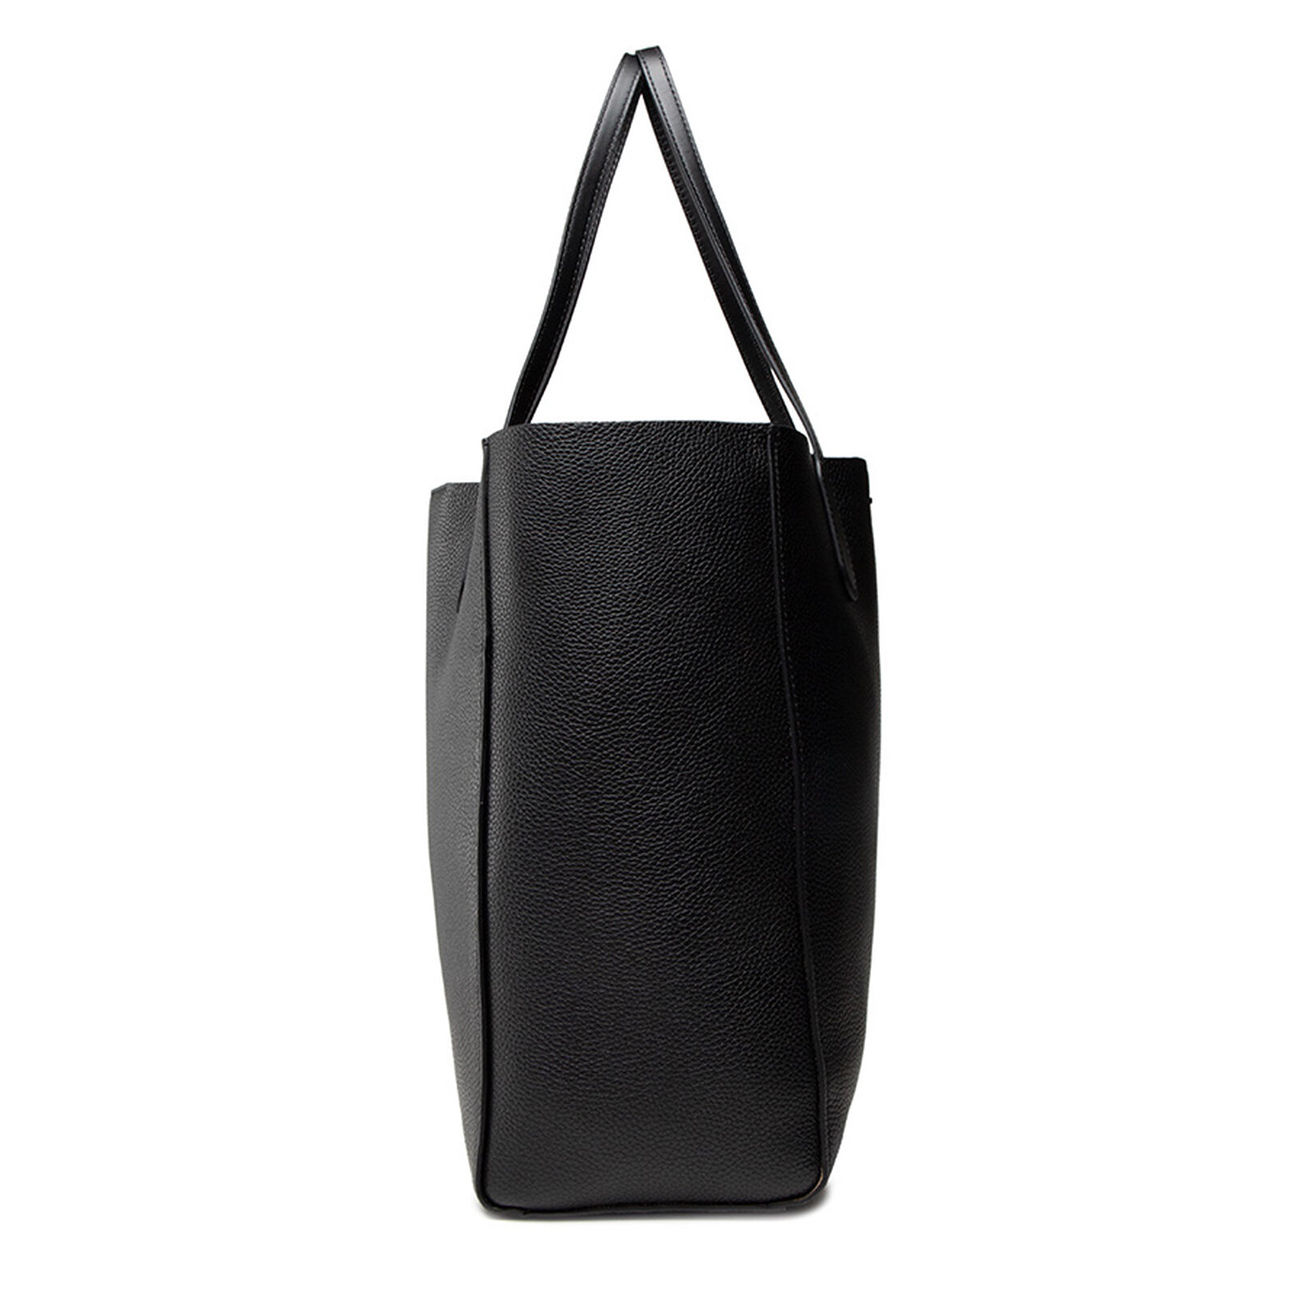 Calvin Klein Saffiano Brown/black Leather Tote Bag 